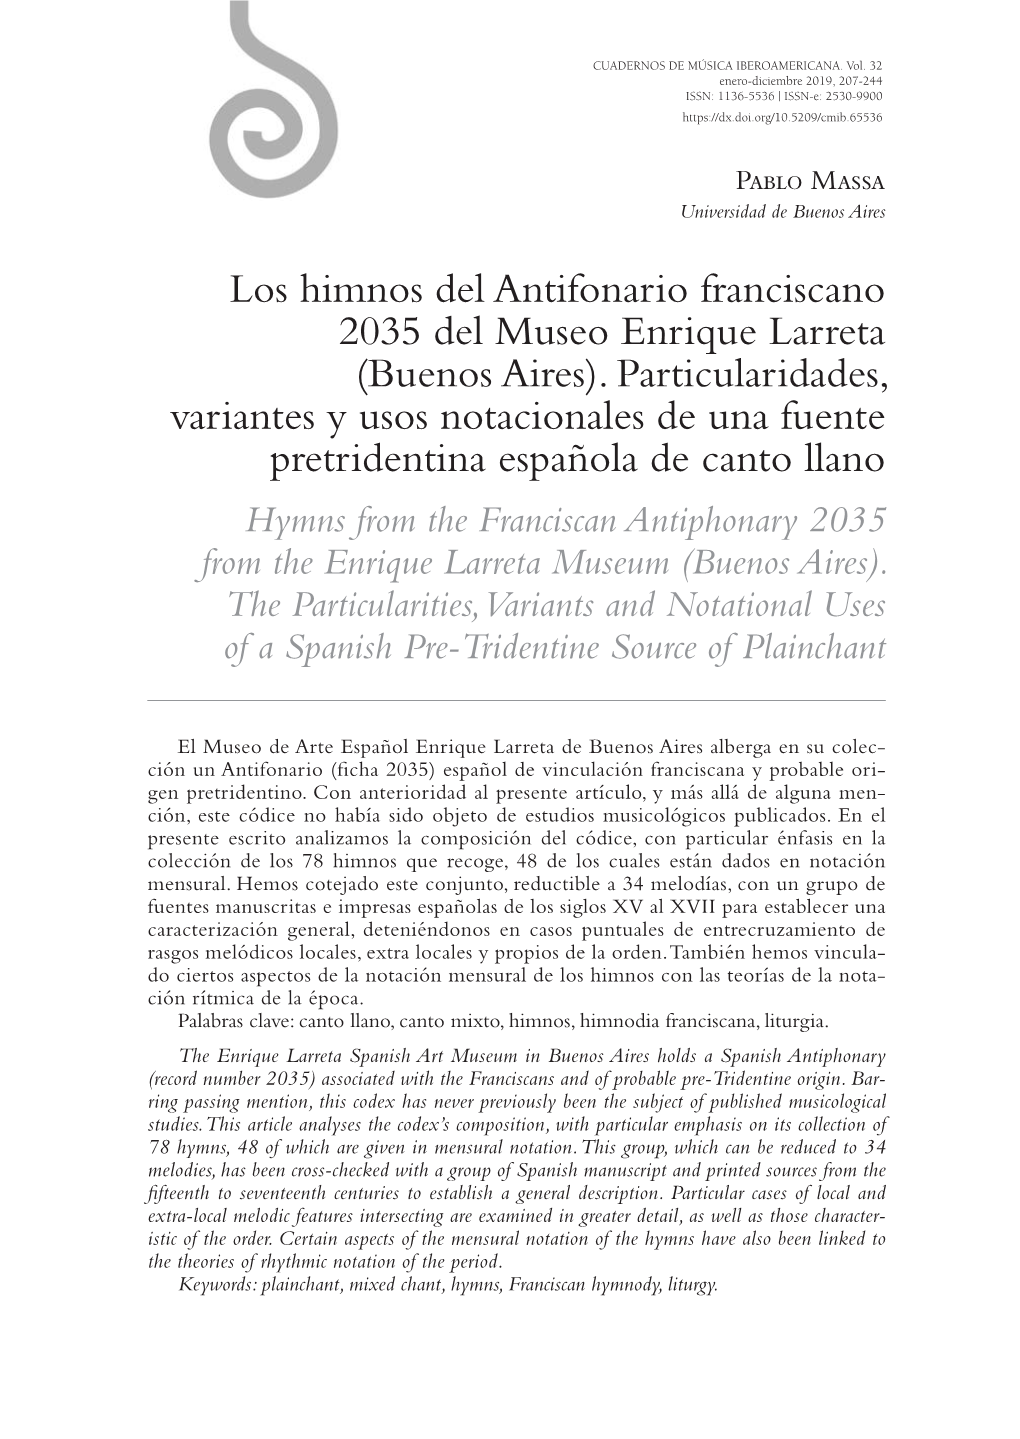 Los Himnos Del Antifonario Franciscano 2035 Del Museo Enrique Larreta (Buenos Aires)